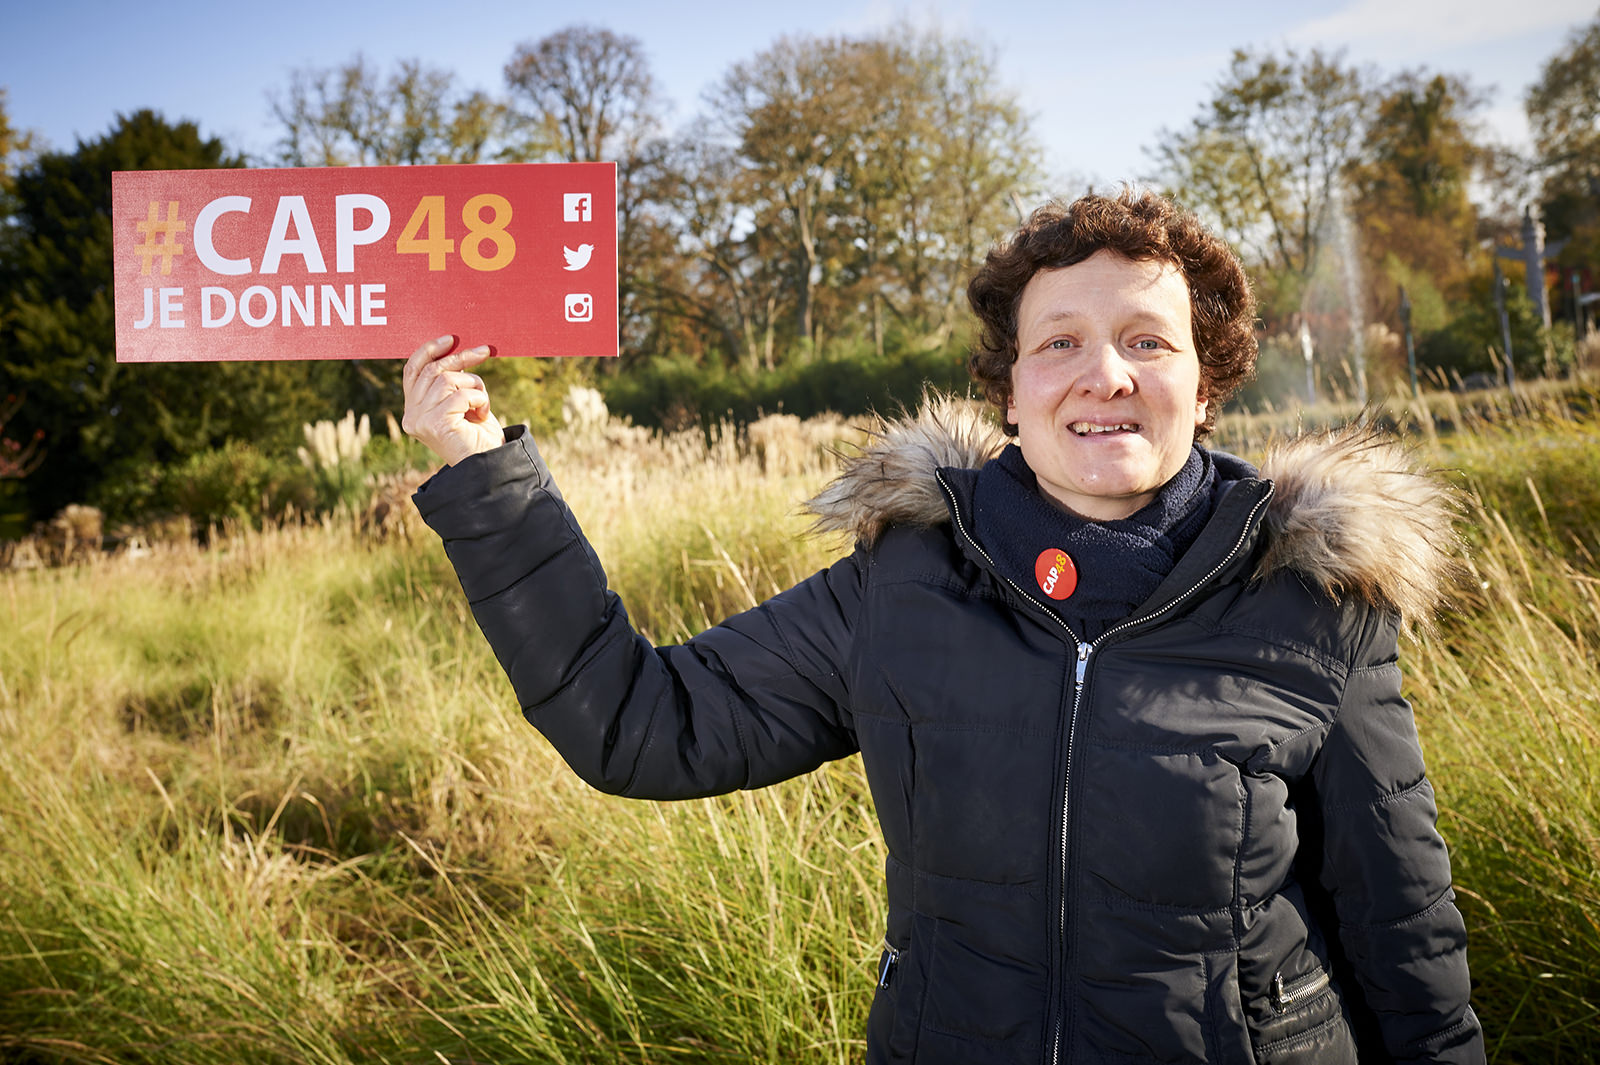 Une femme, bénévole CAP48, souriant et tenant en main une pancarte avec le slogan : "CAP48 je donne" lors d'une campagne d'appel aux dons